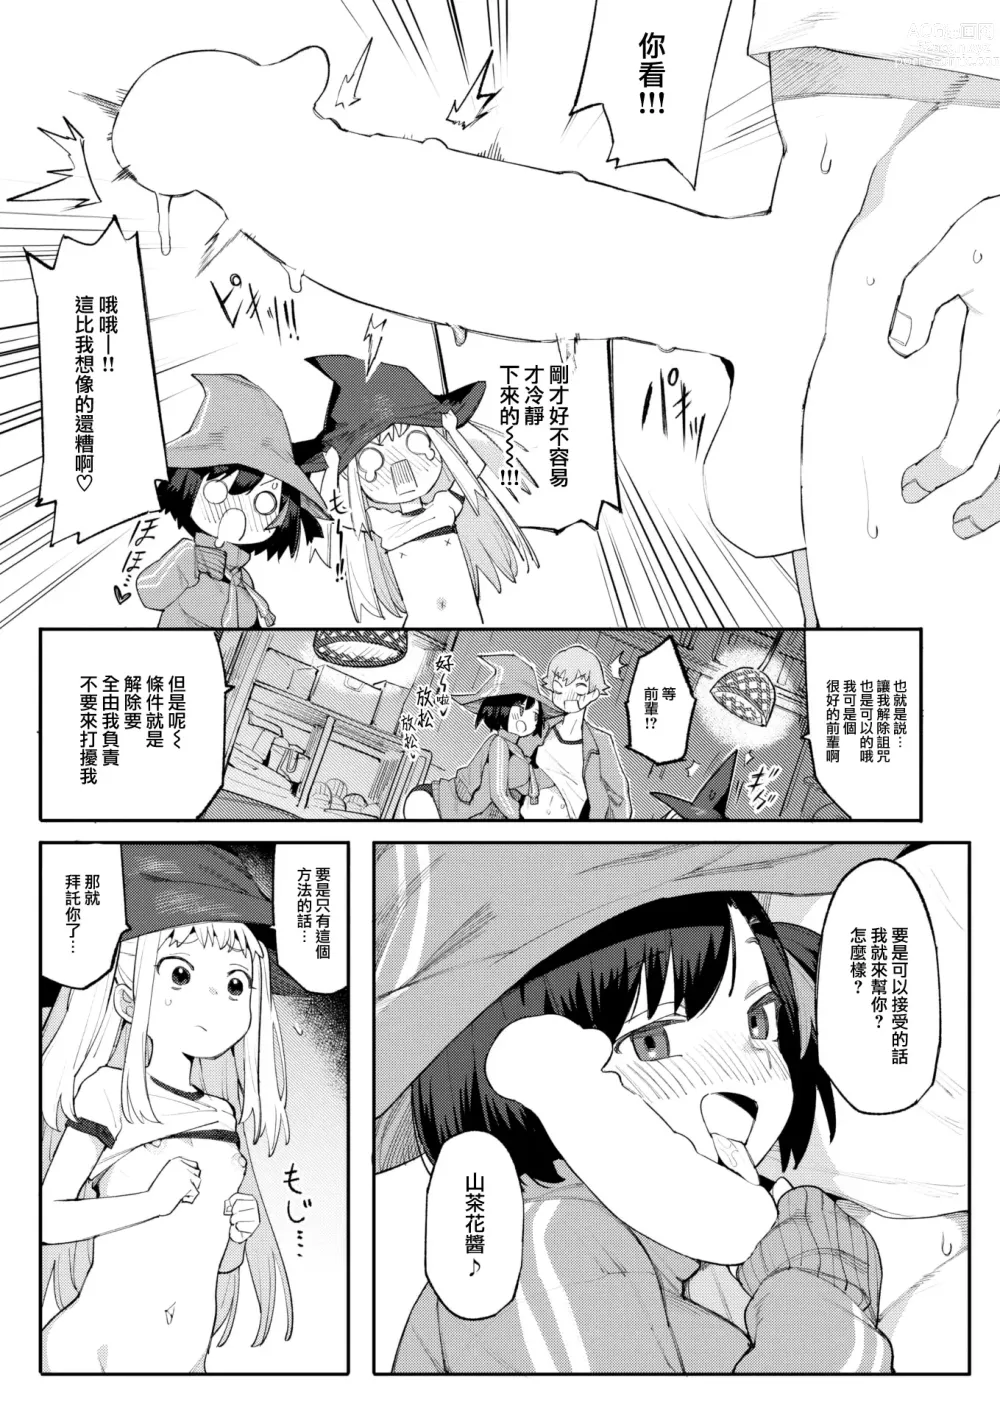 Page 9 of manga Majo wa hoshikute shikata ga nai!